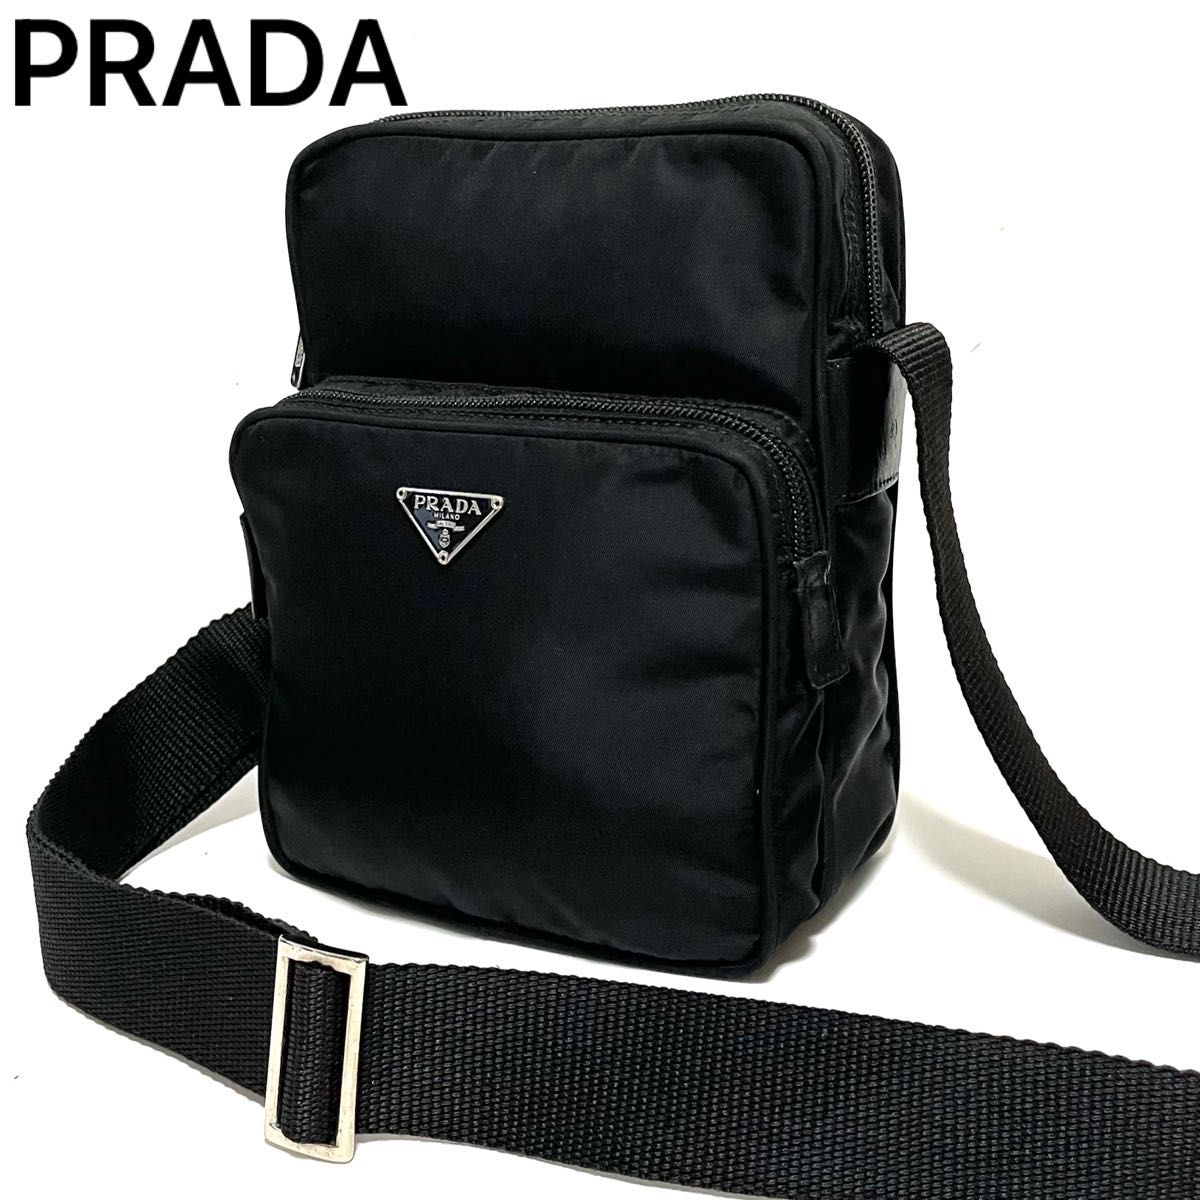 PRADA プラダ ショルダーバッグ アマゾン型 ナイロン × レザー 三角ロゴ 白タグ 黒 ブラック メンズ レディース